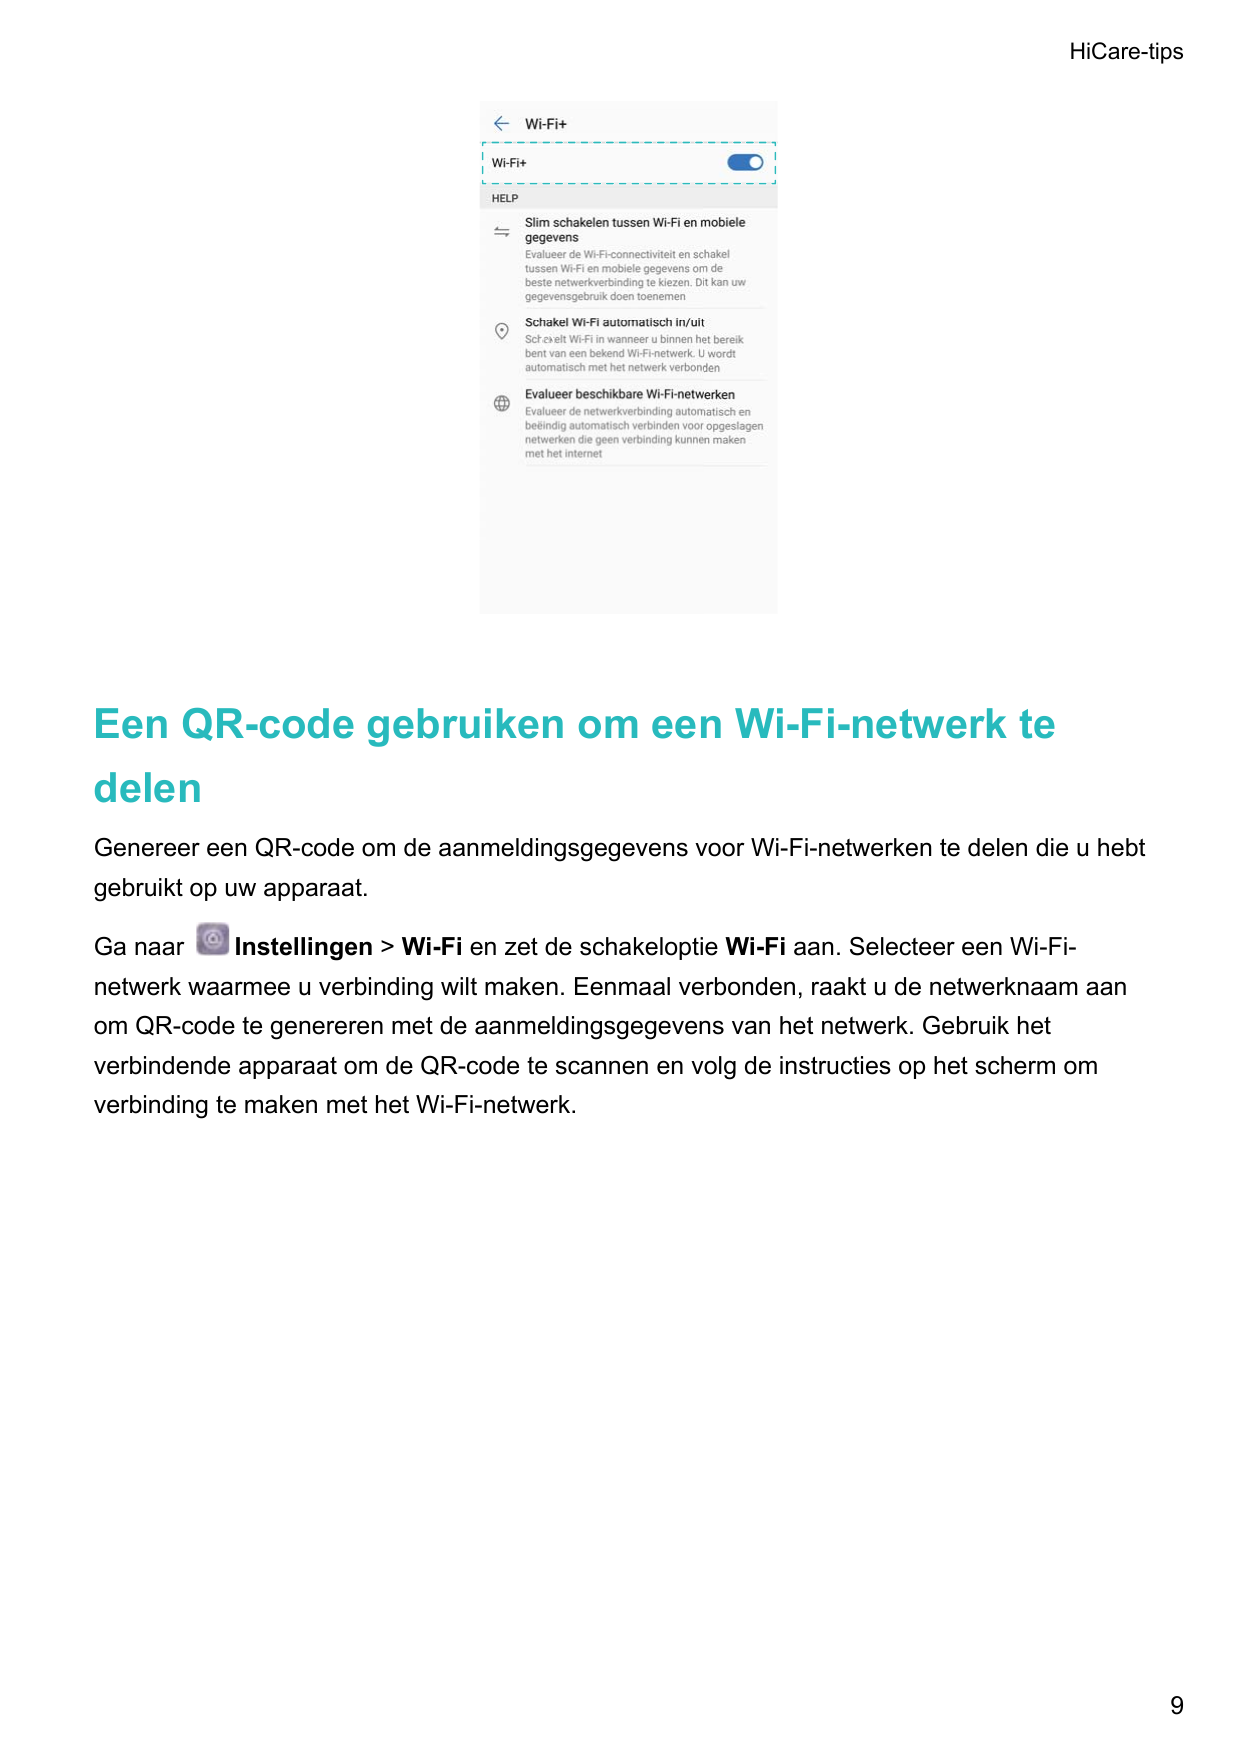 HiCare-tipsEen QR-code gebruiken om een Wi-Fi-netwerk tedelenGenereer een QR-code om de aanmeldingsgegevens voor Wi-Fi-netwerken